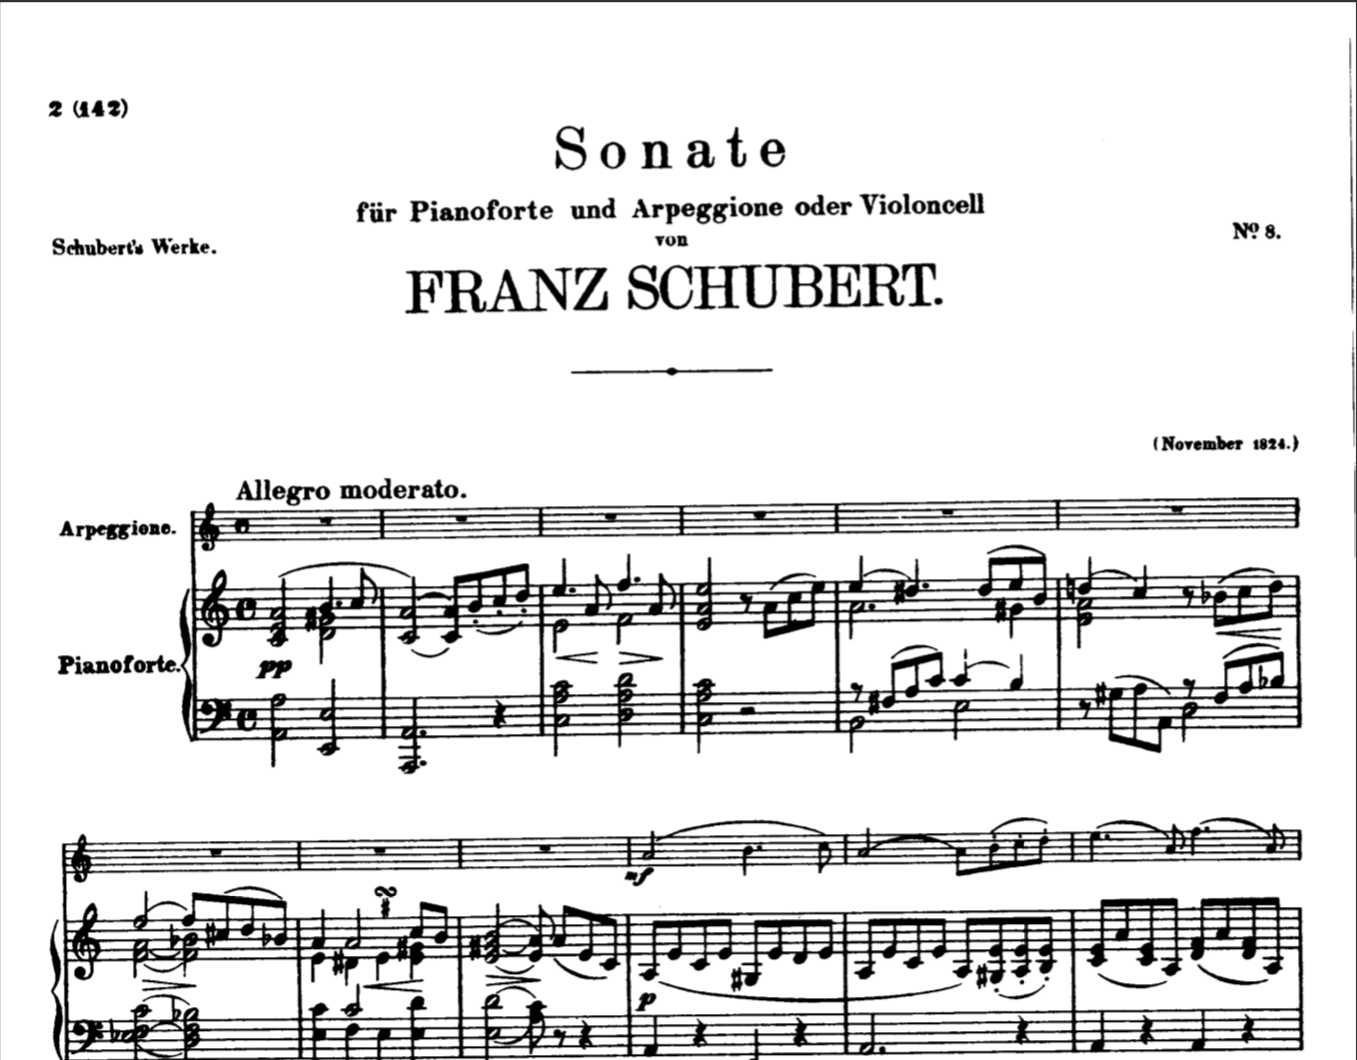 Sonata-for-arpeggione-and-fortepiano pdf sheet music free download